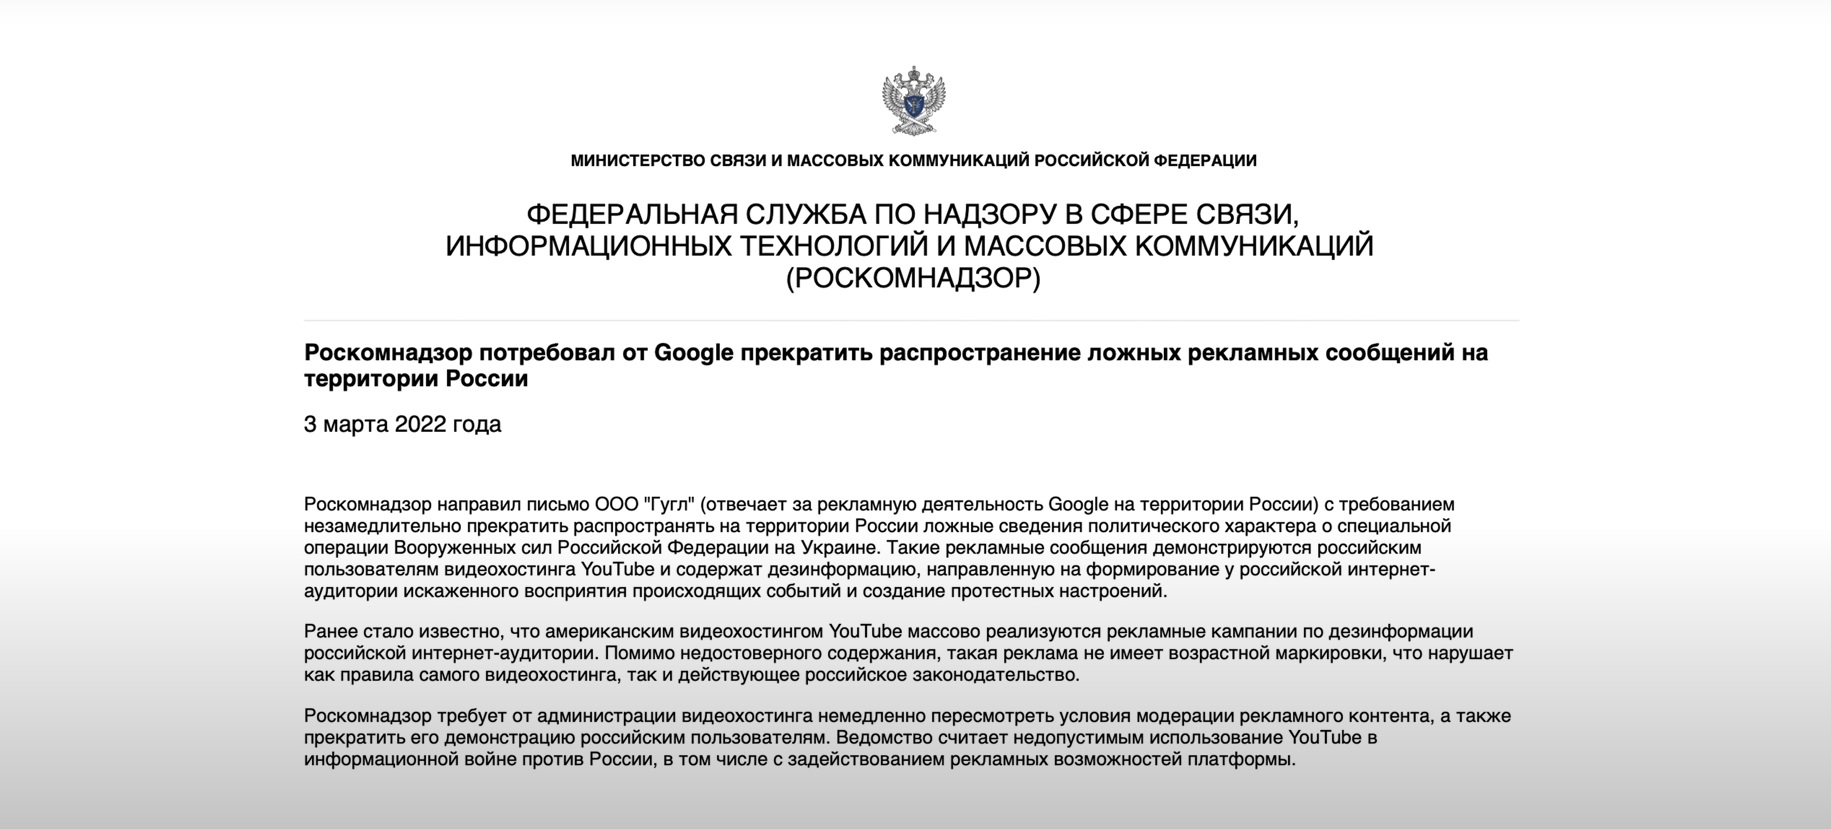 Google отключил всю монетизацию на территории России. Что это значит 2